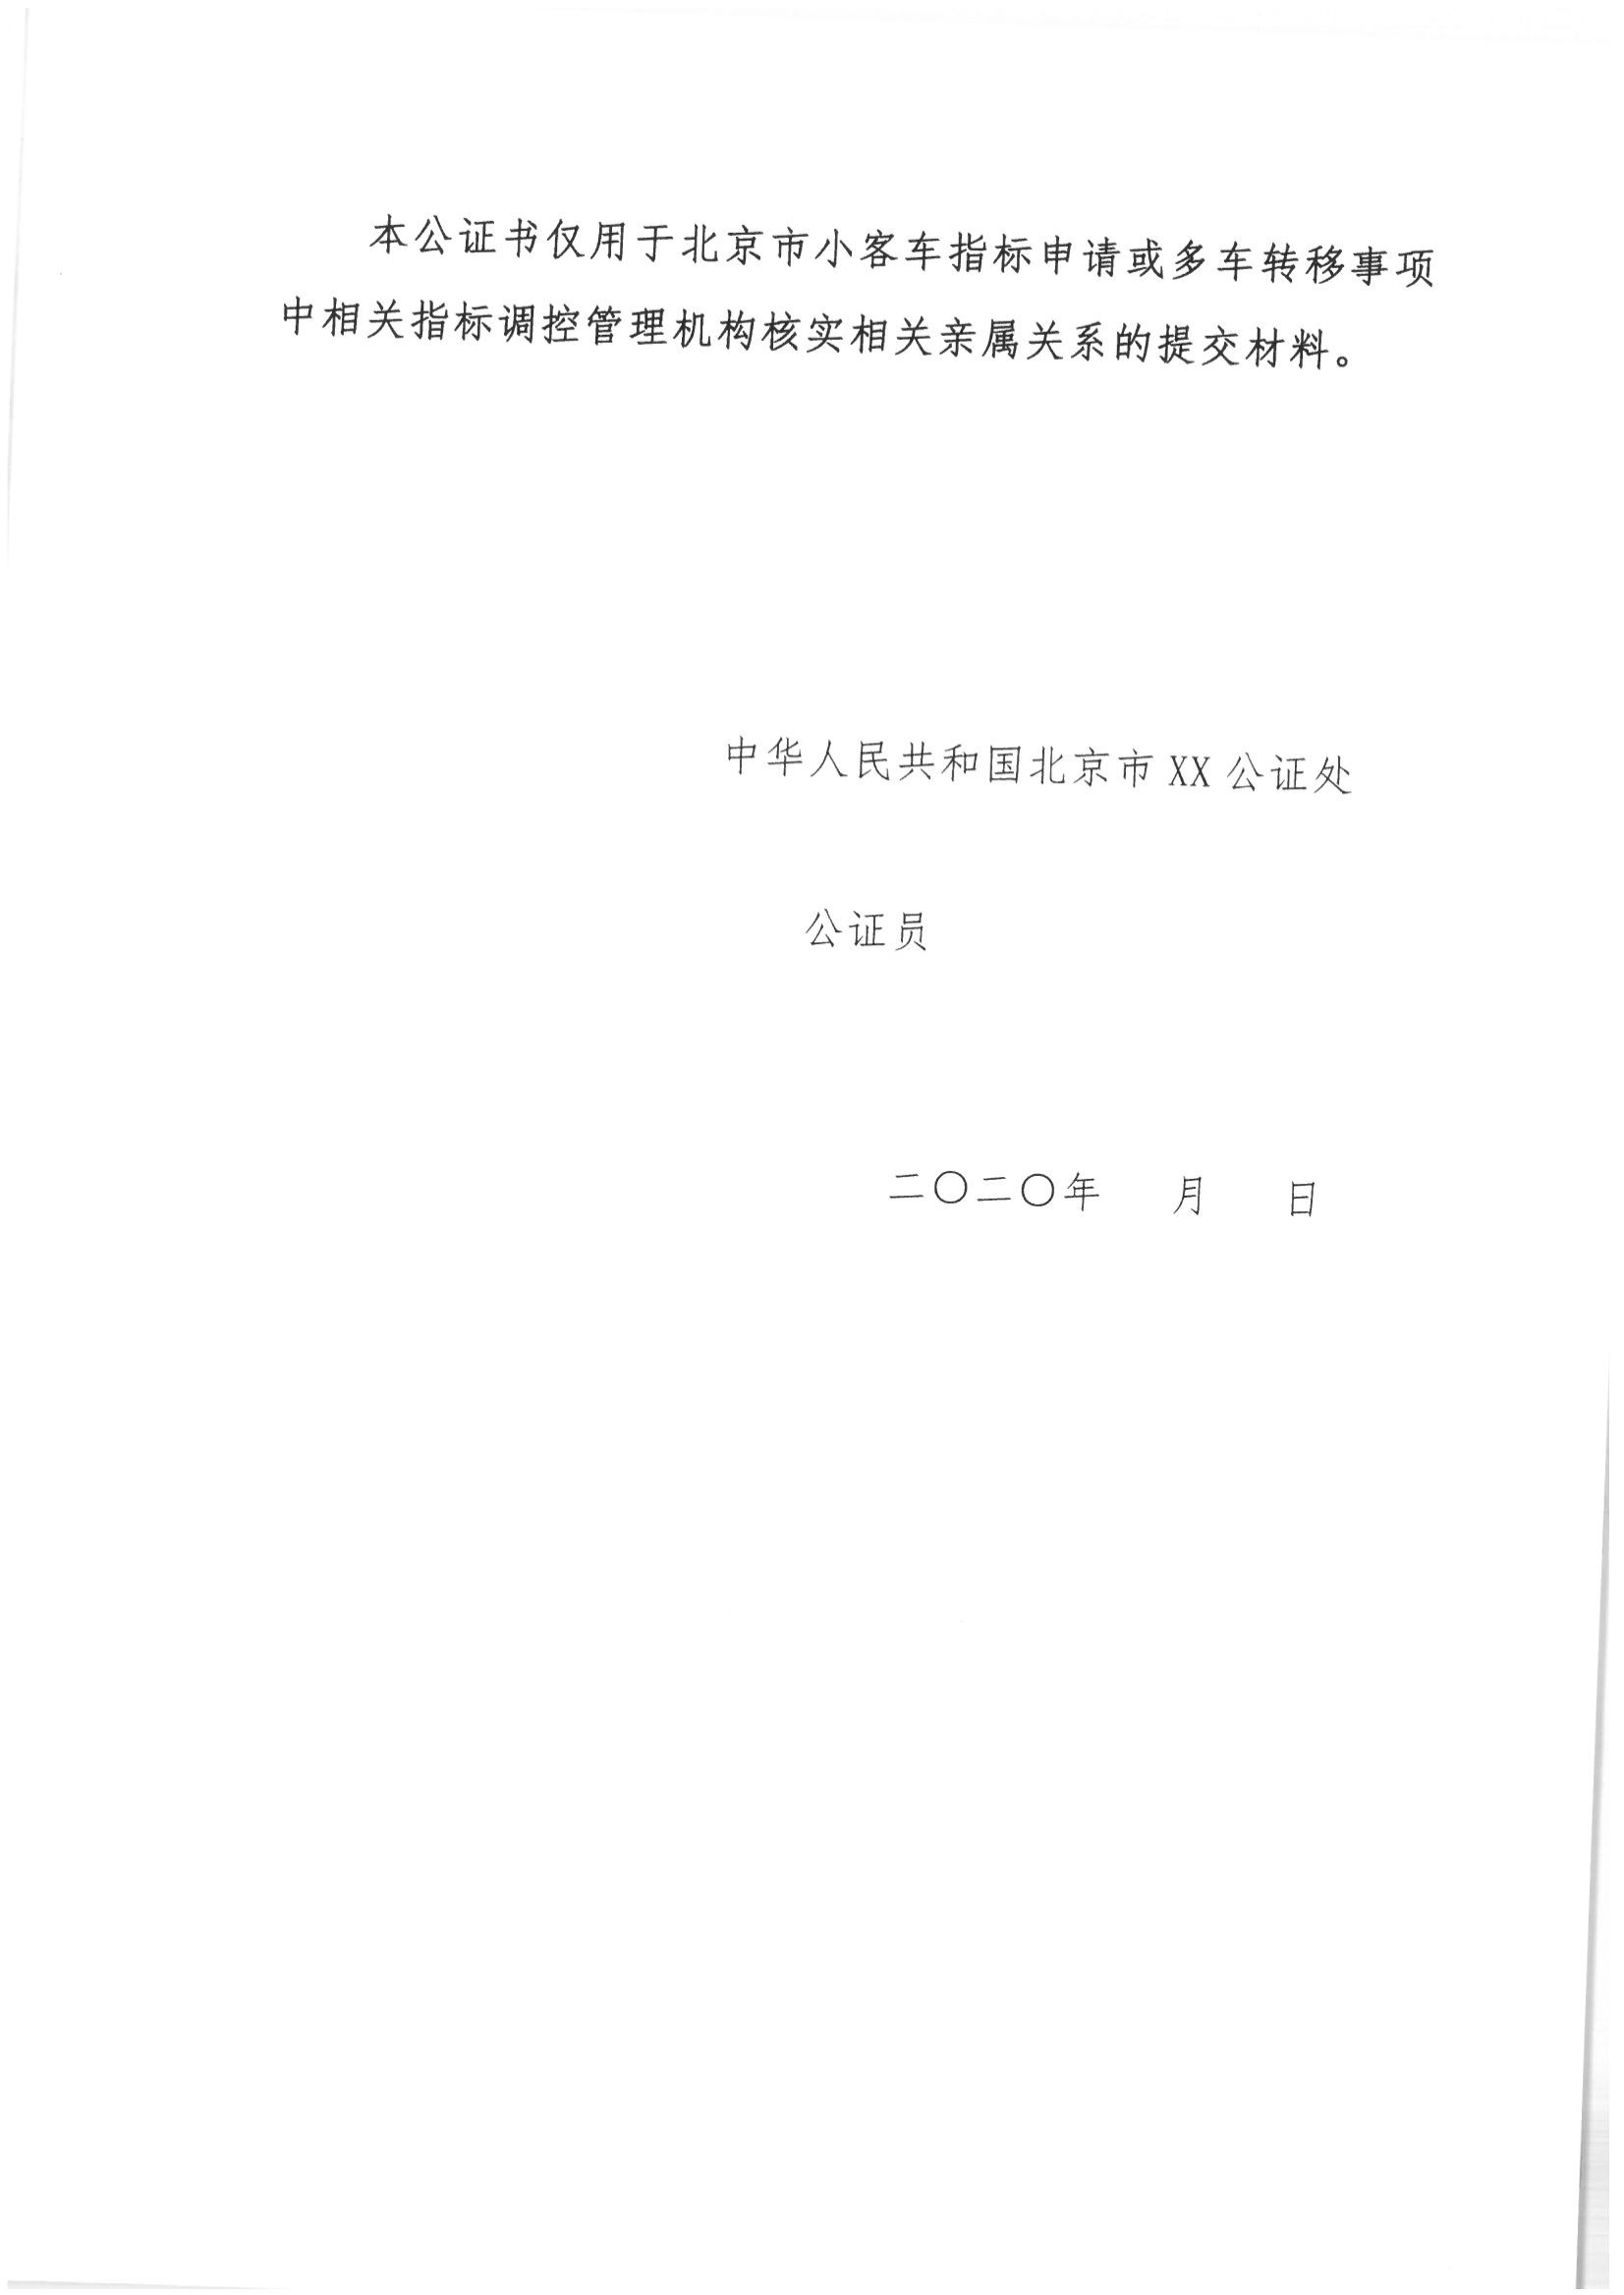 京公协字【2021】21号 北京市公证协会规范执业指引【第13号】_10